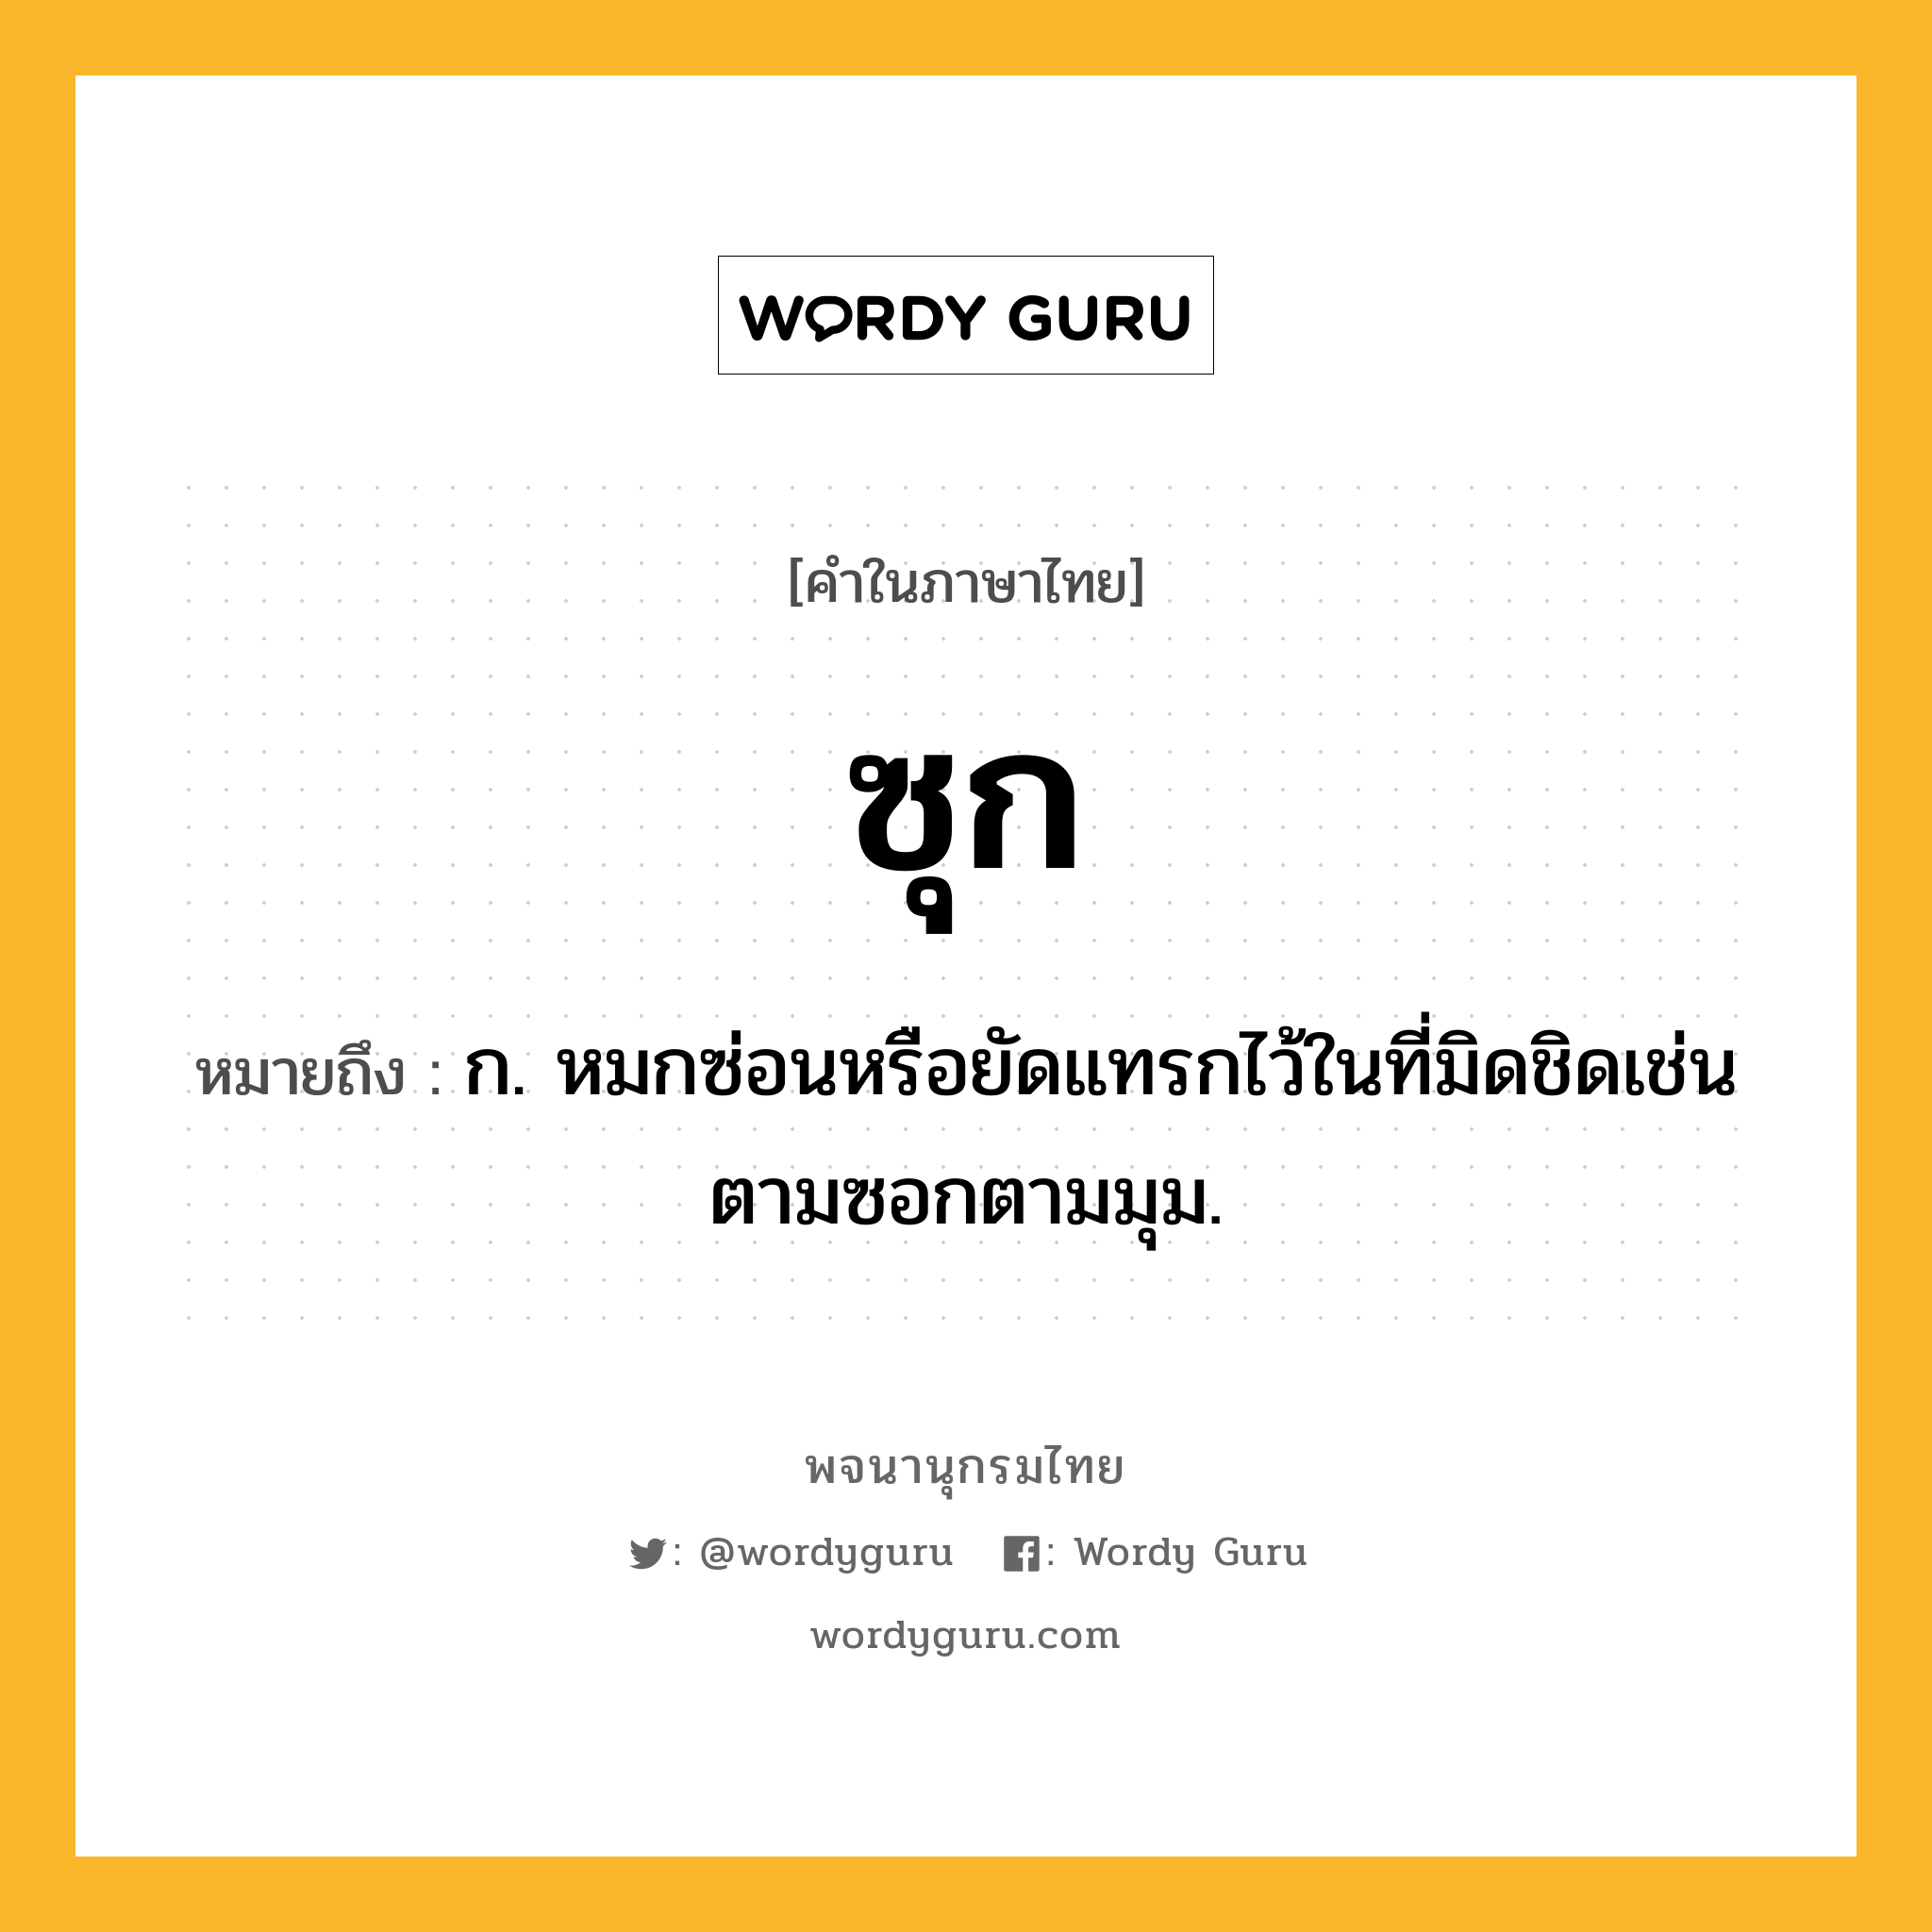 ซุก ความหมาย หมายถึงอะไร?, คำในภาษาไทย ซุก หมายถึง ก. หมกซ่อนหรือยัดแทรกไว้ในที่มิดชิดเช่นตามซอกตามมุม.